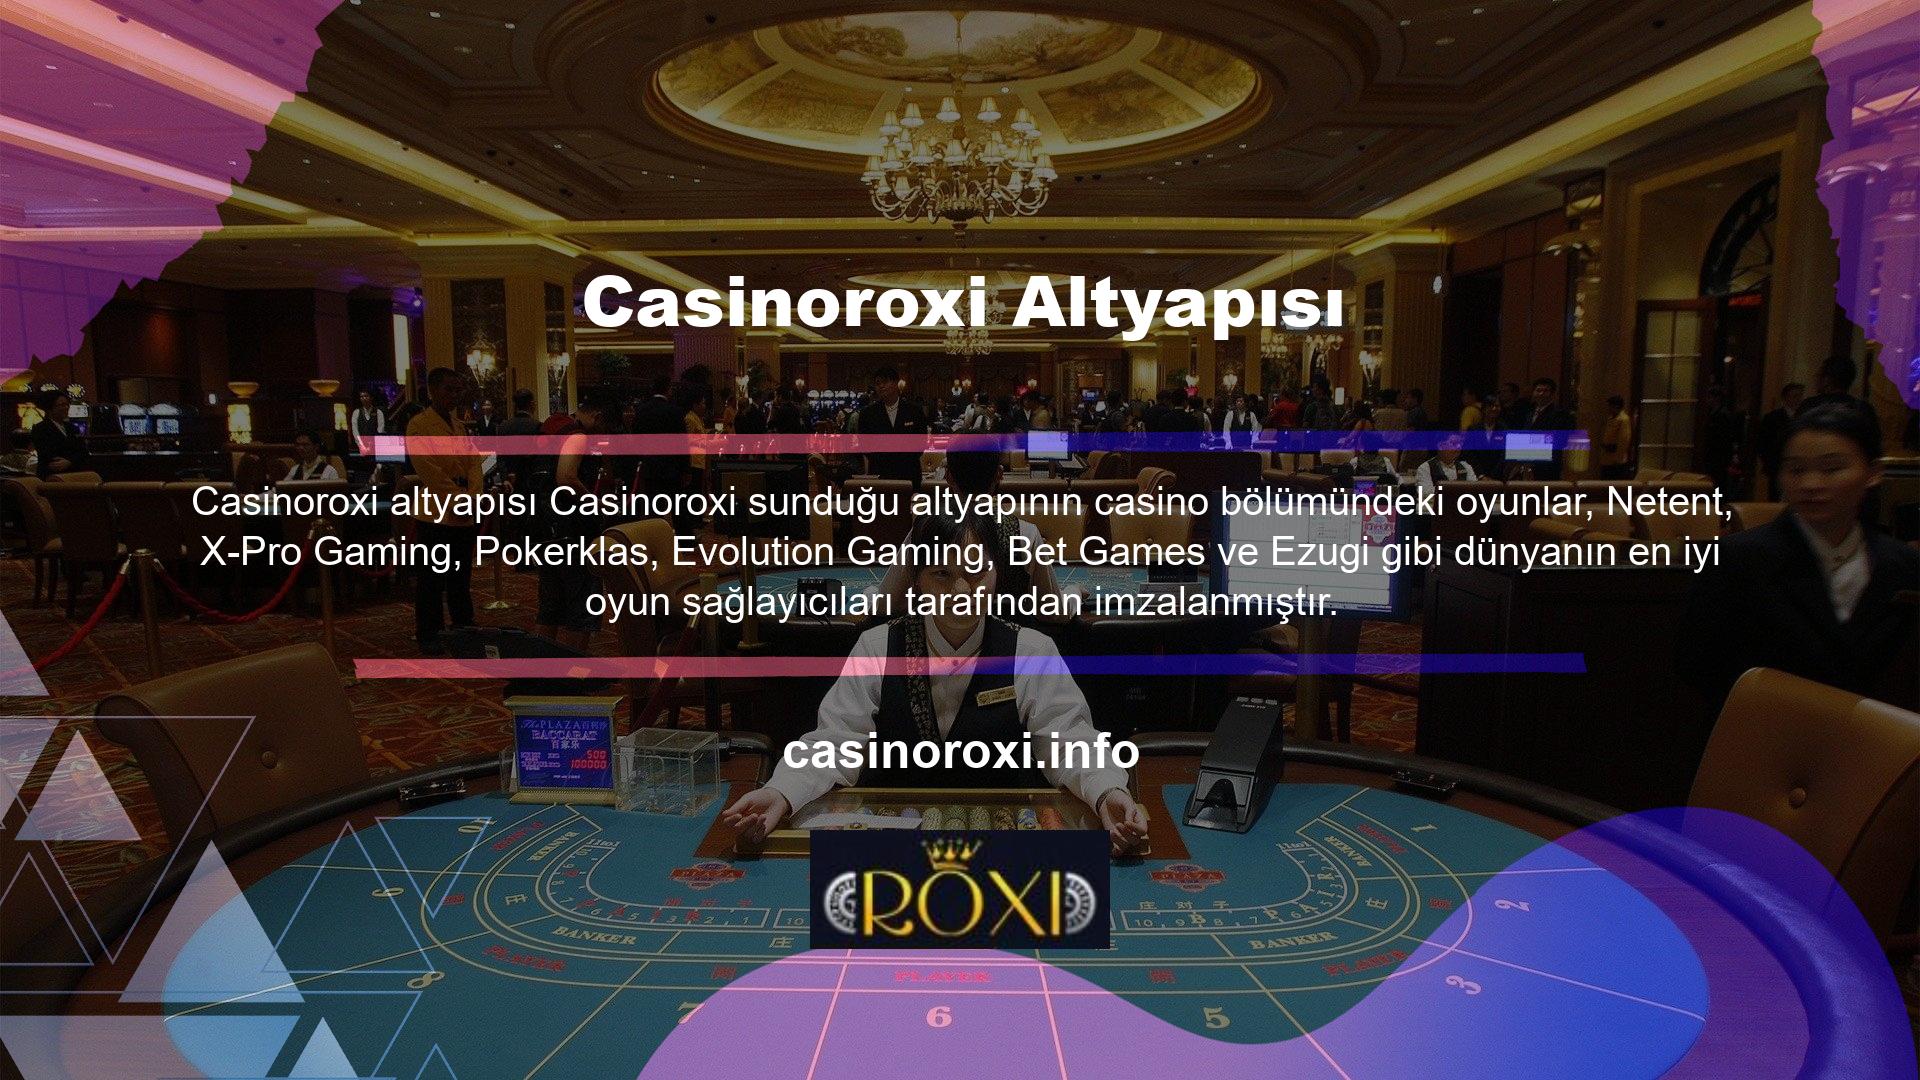 Sonuç olarak Casinoroxi, heyecan ve zevk sevenler için sonsuz olasılıklar alanı haline geldi